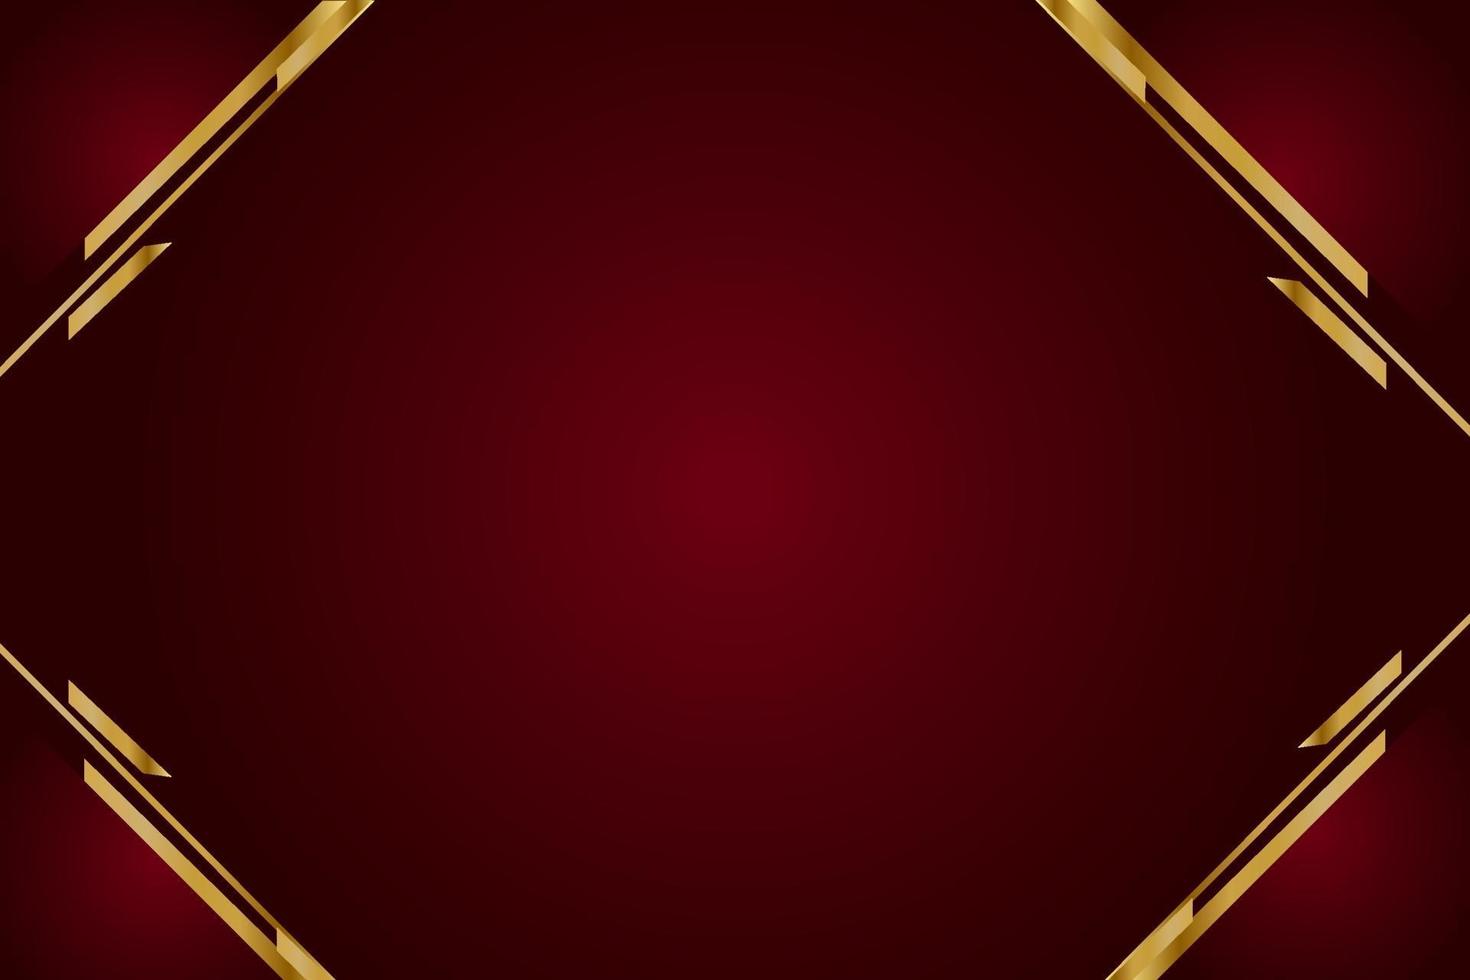 moderne rode luxeachtergrond met gouden lijn en glanzend gouden licht. vector